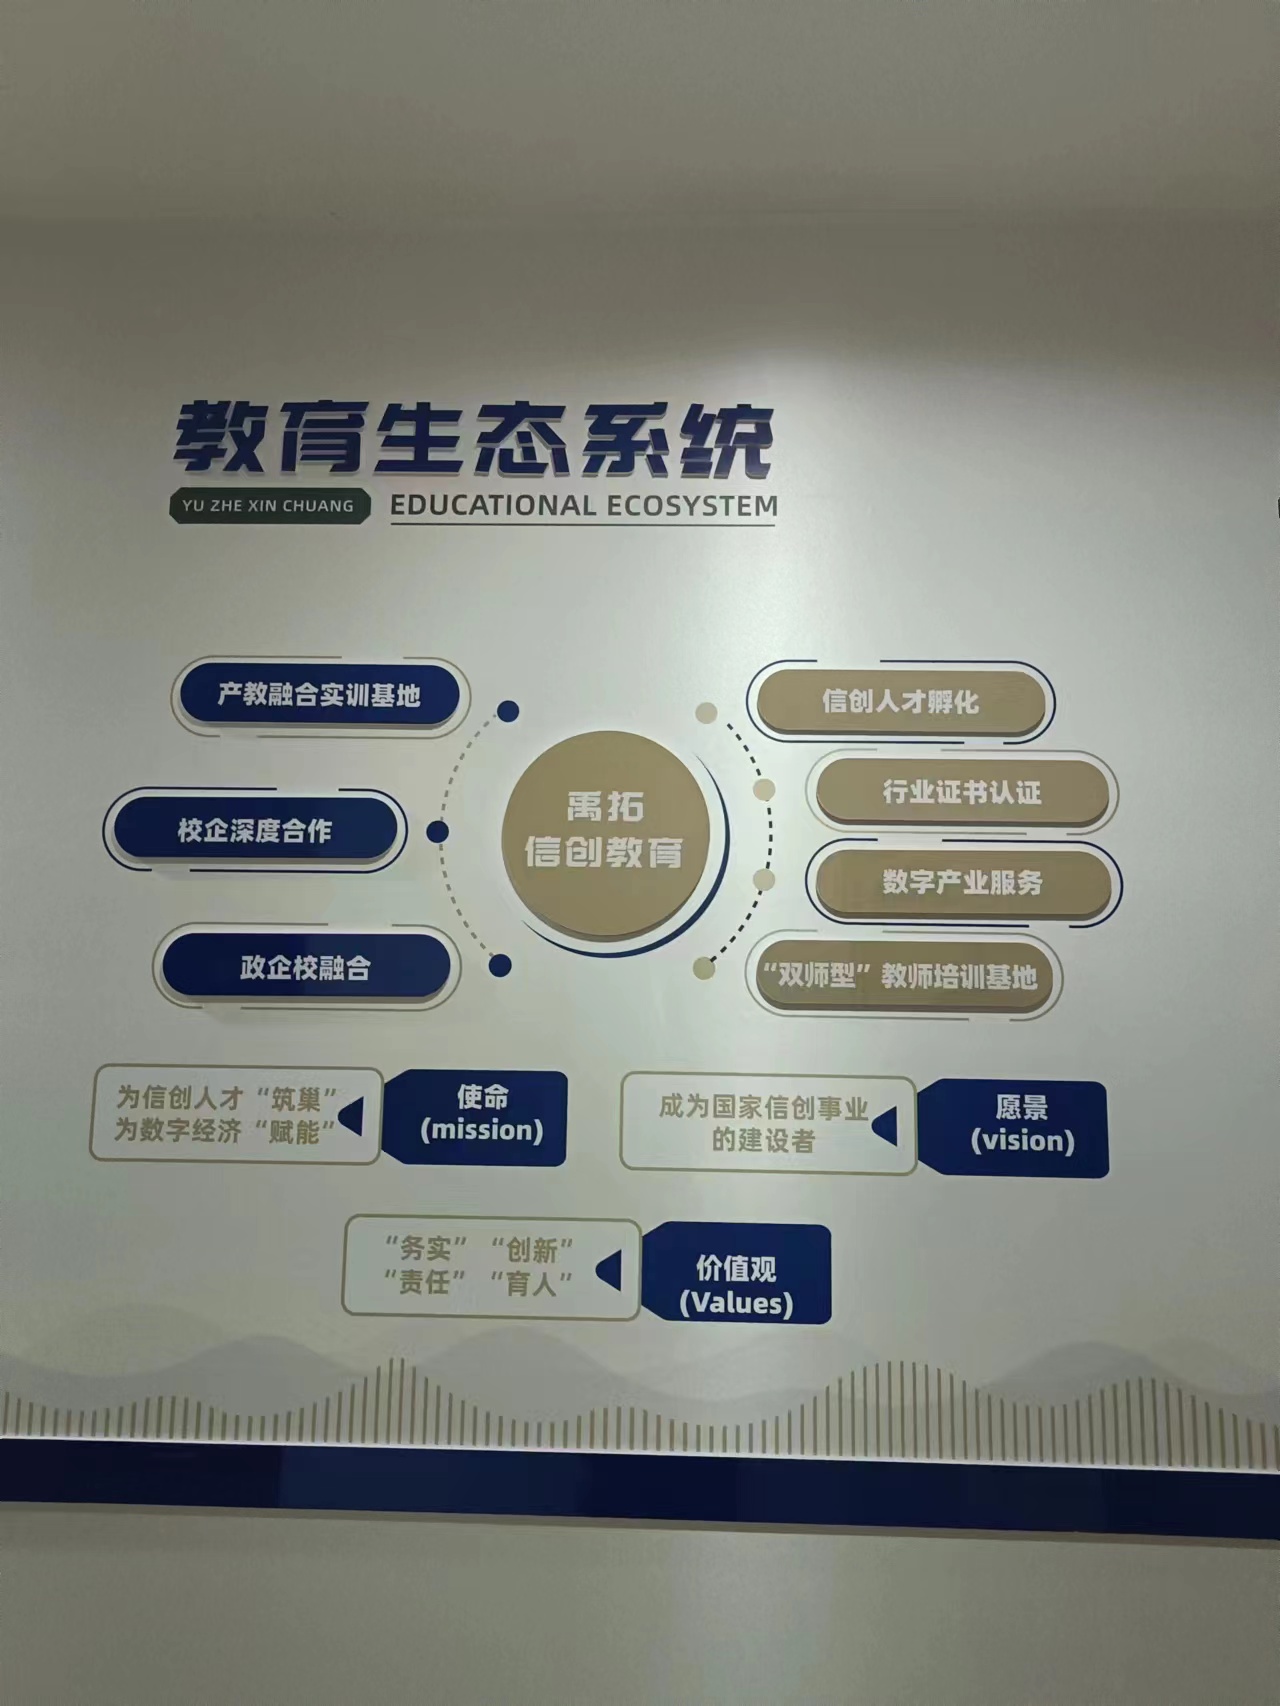 中宇数科(北京)科技有限公司